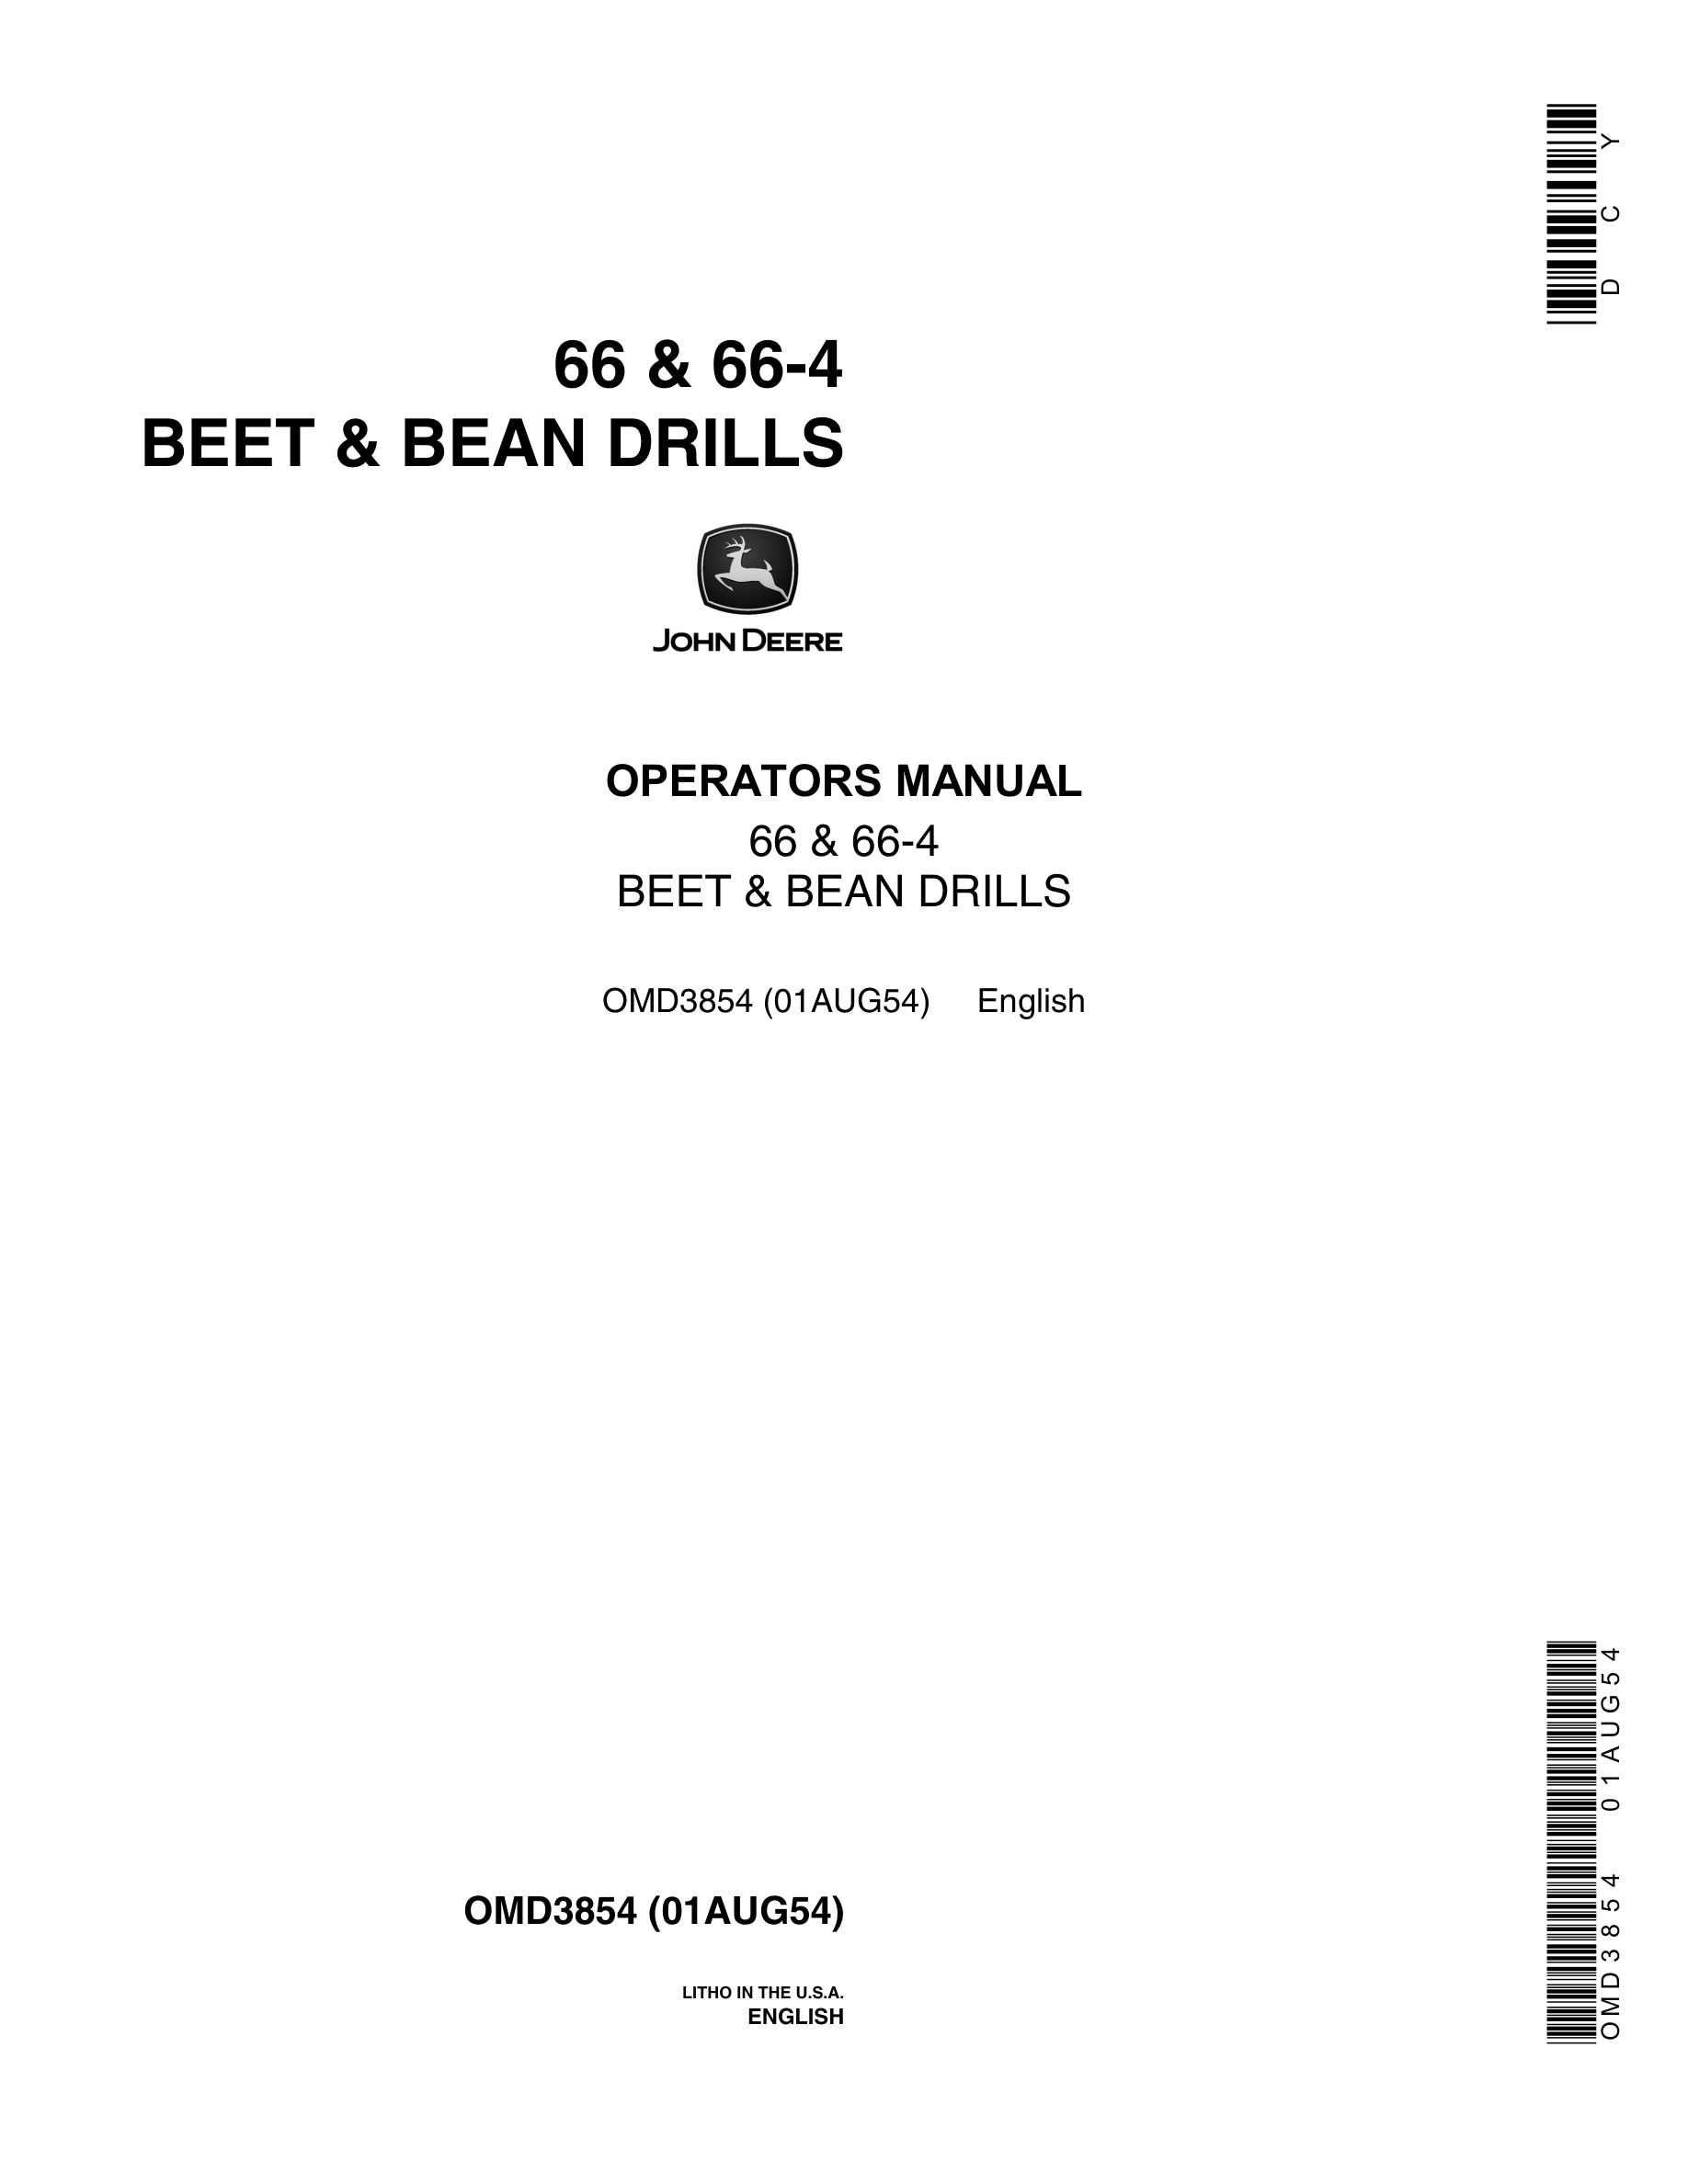 John Deere 66 & 66-4 BEET & BEAN DRILL Operator Manual OMD3854-1